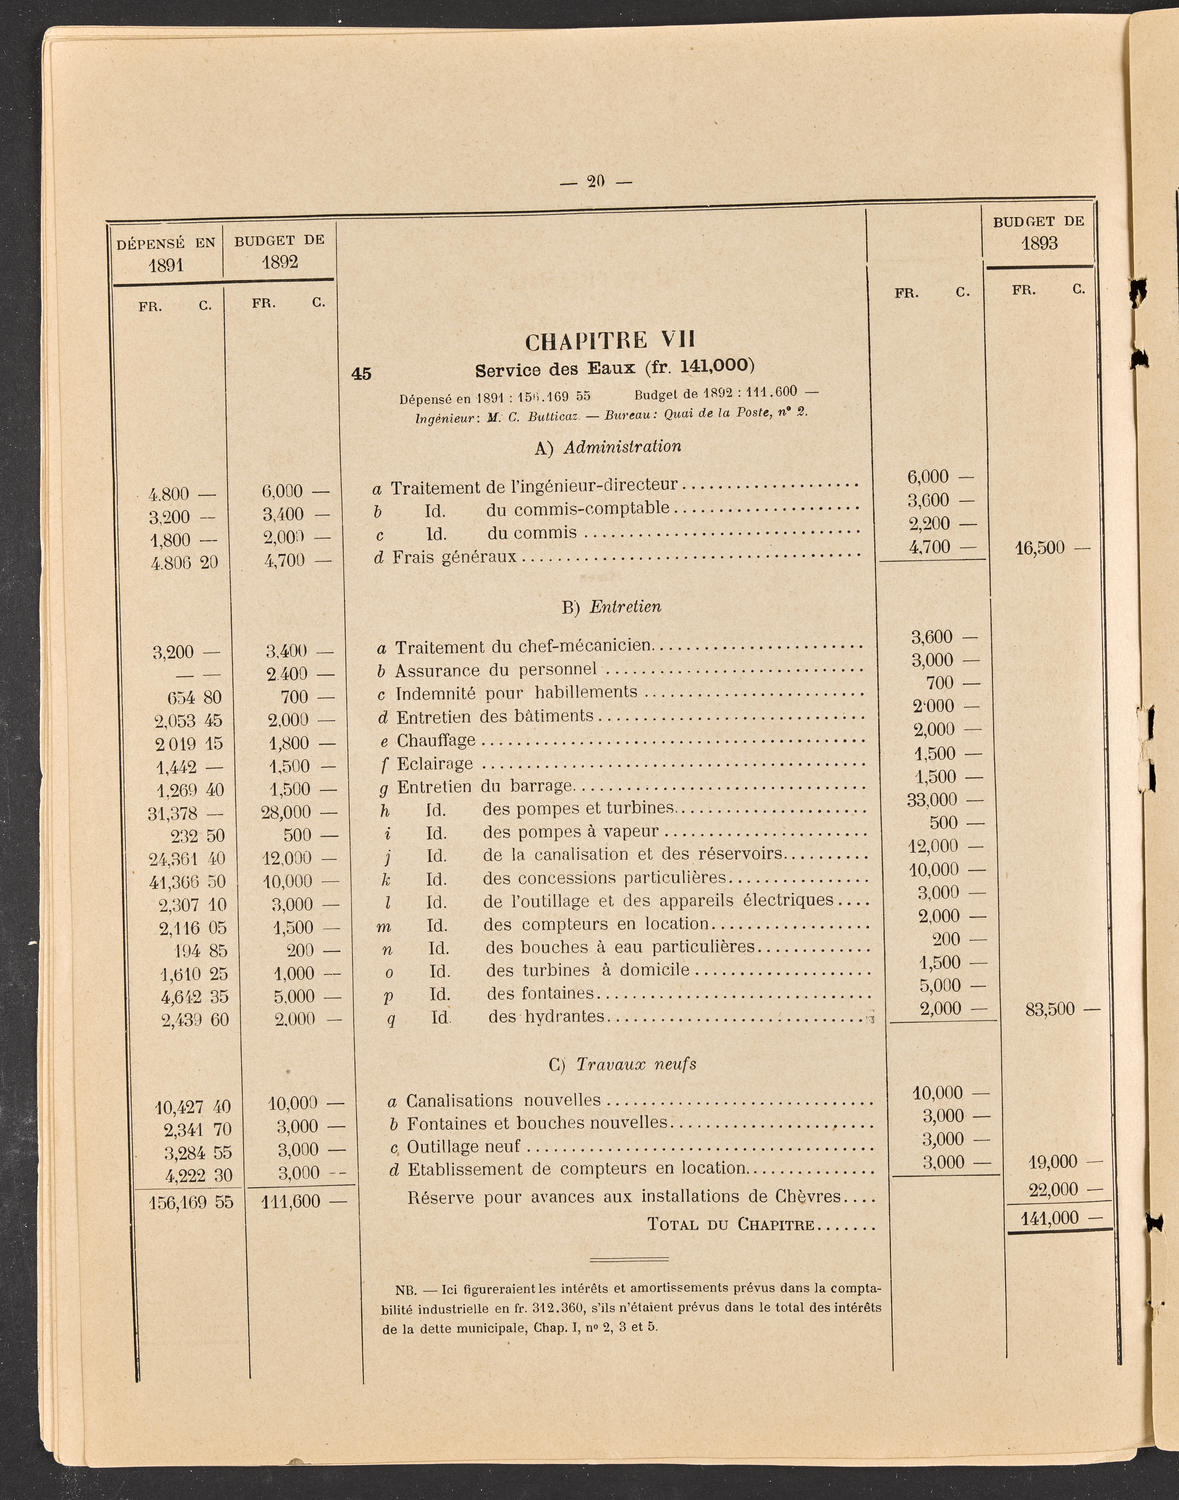 Budget de la Ville de Genève - Exercise de 1893, page 26 of 32